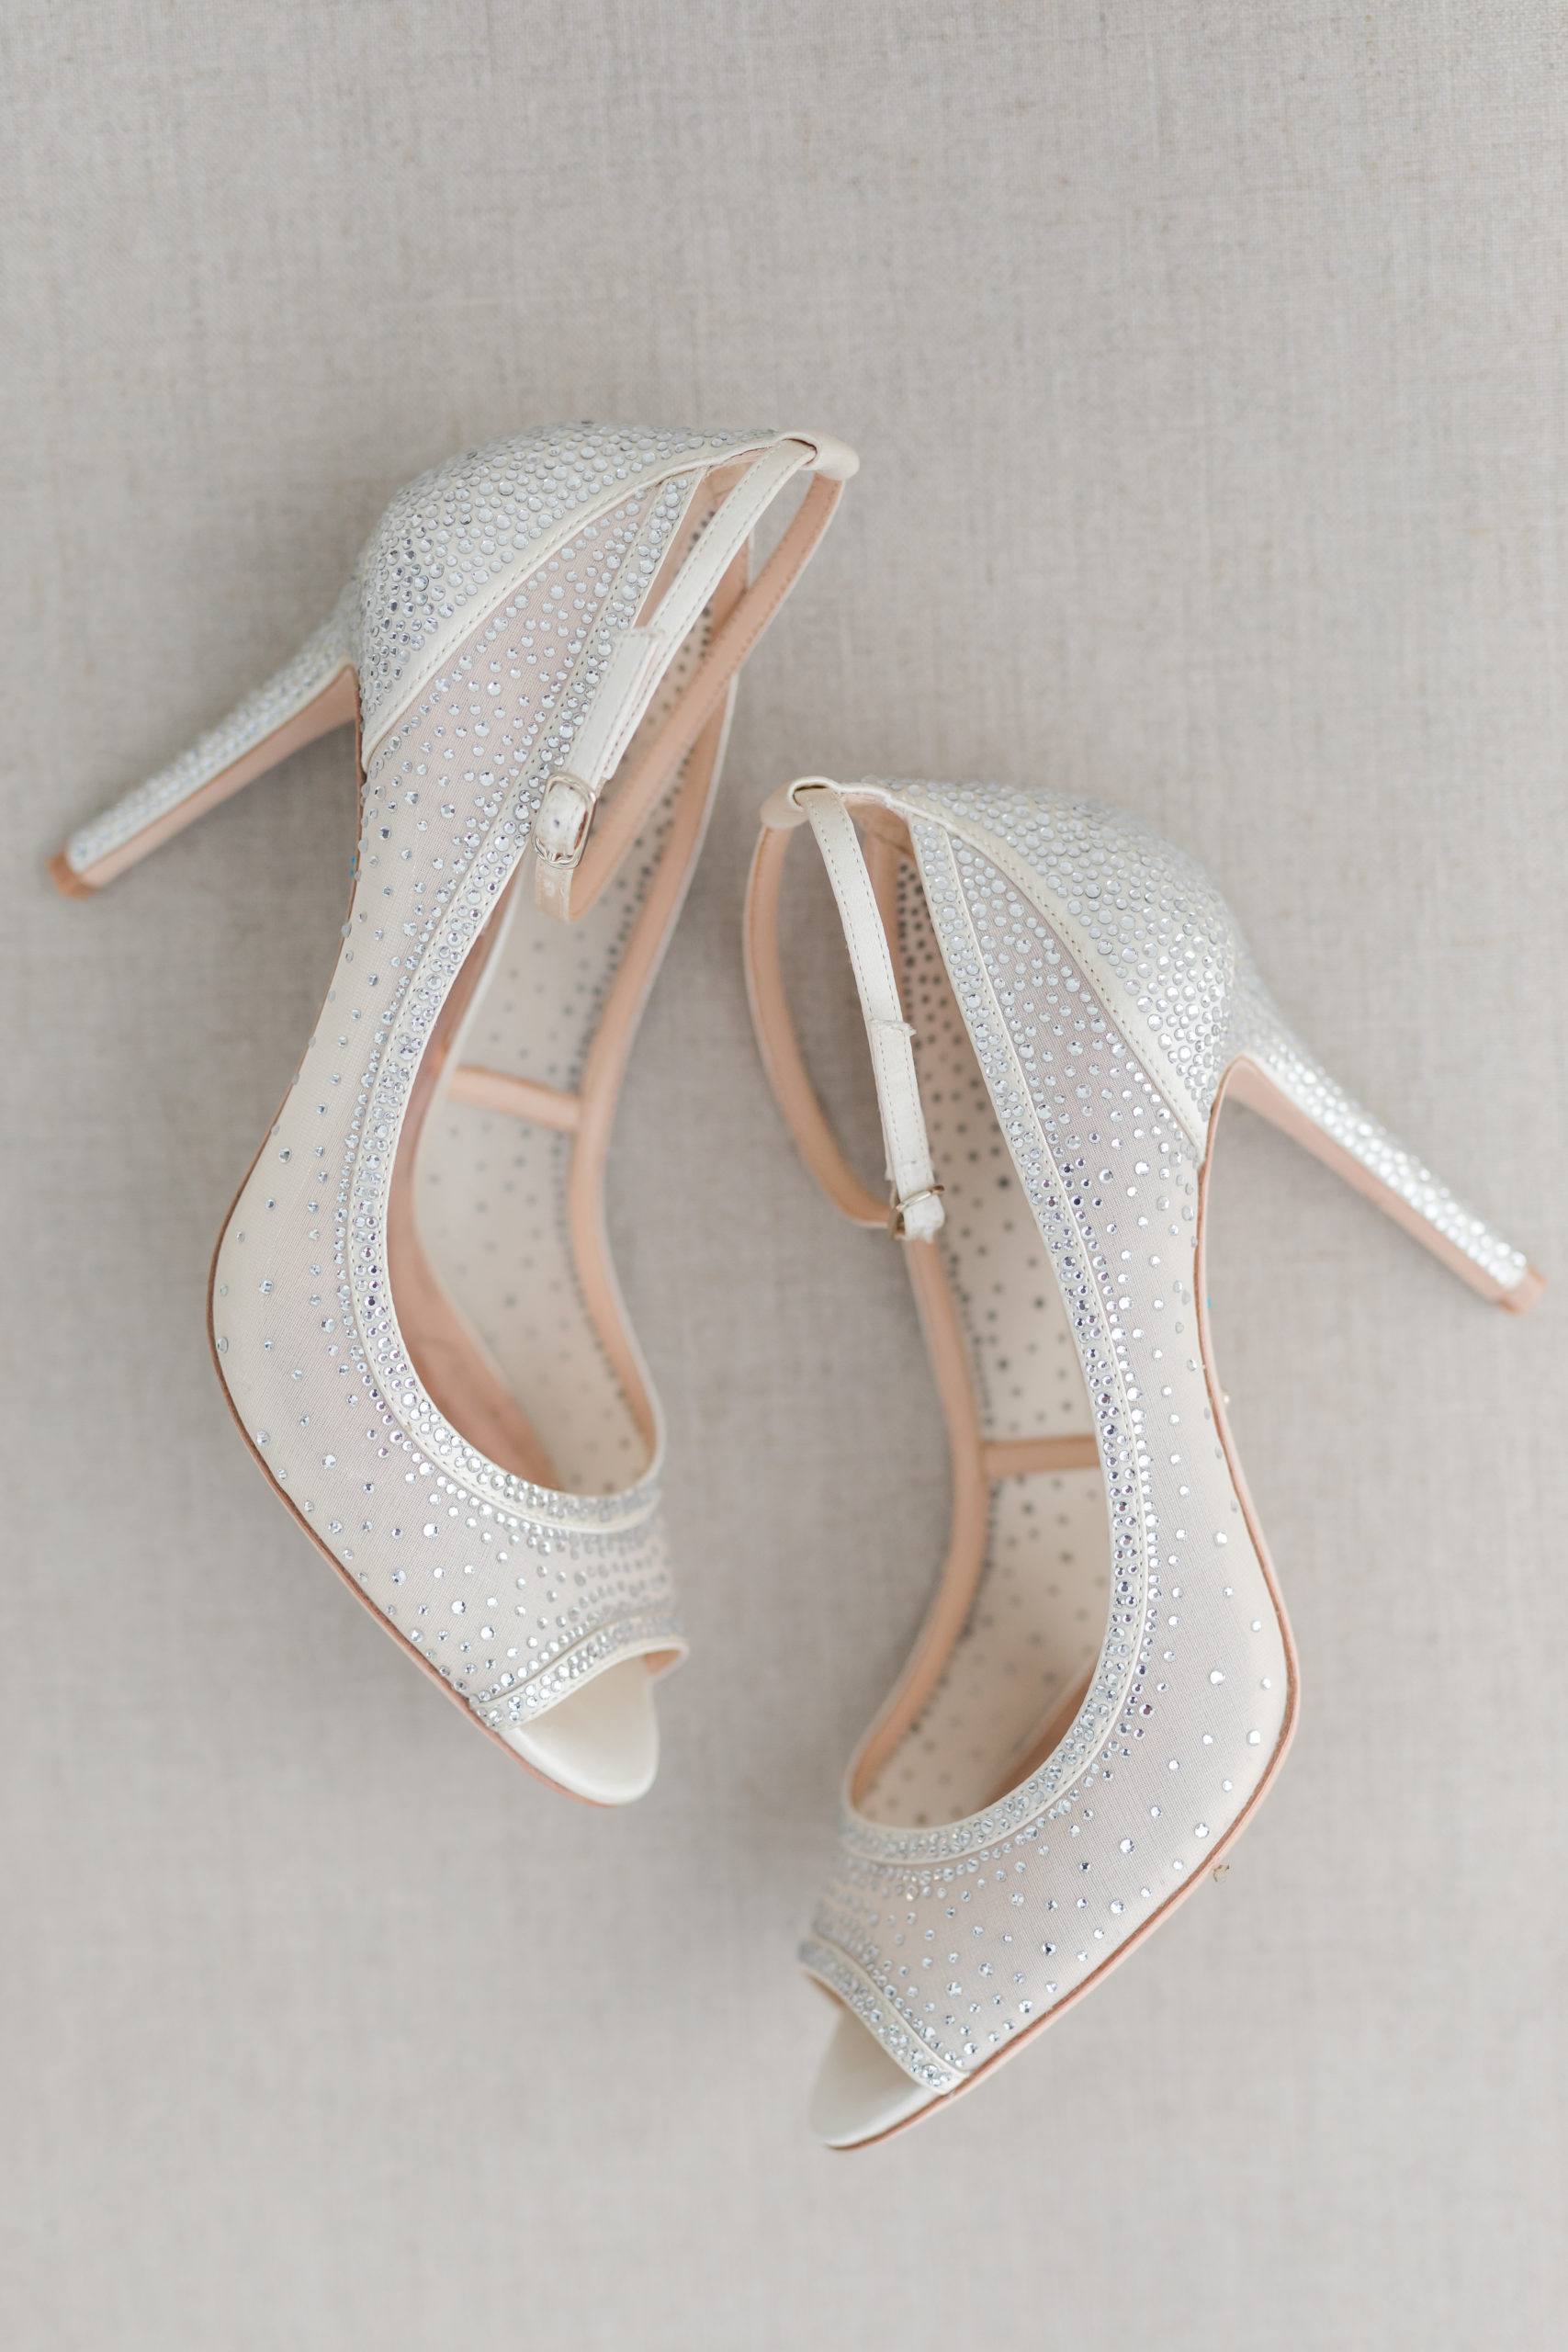 jeremia-amanda-badgley-mischka-bridal-shoes